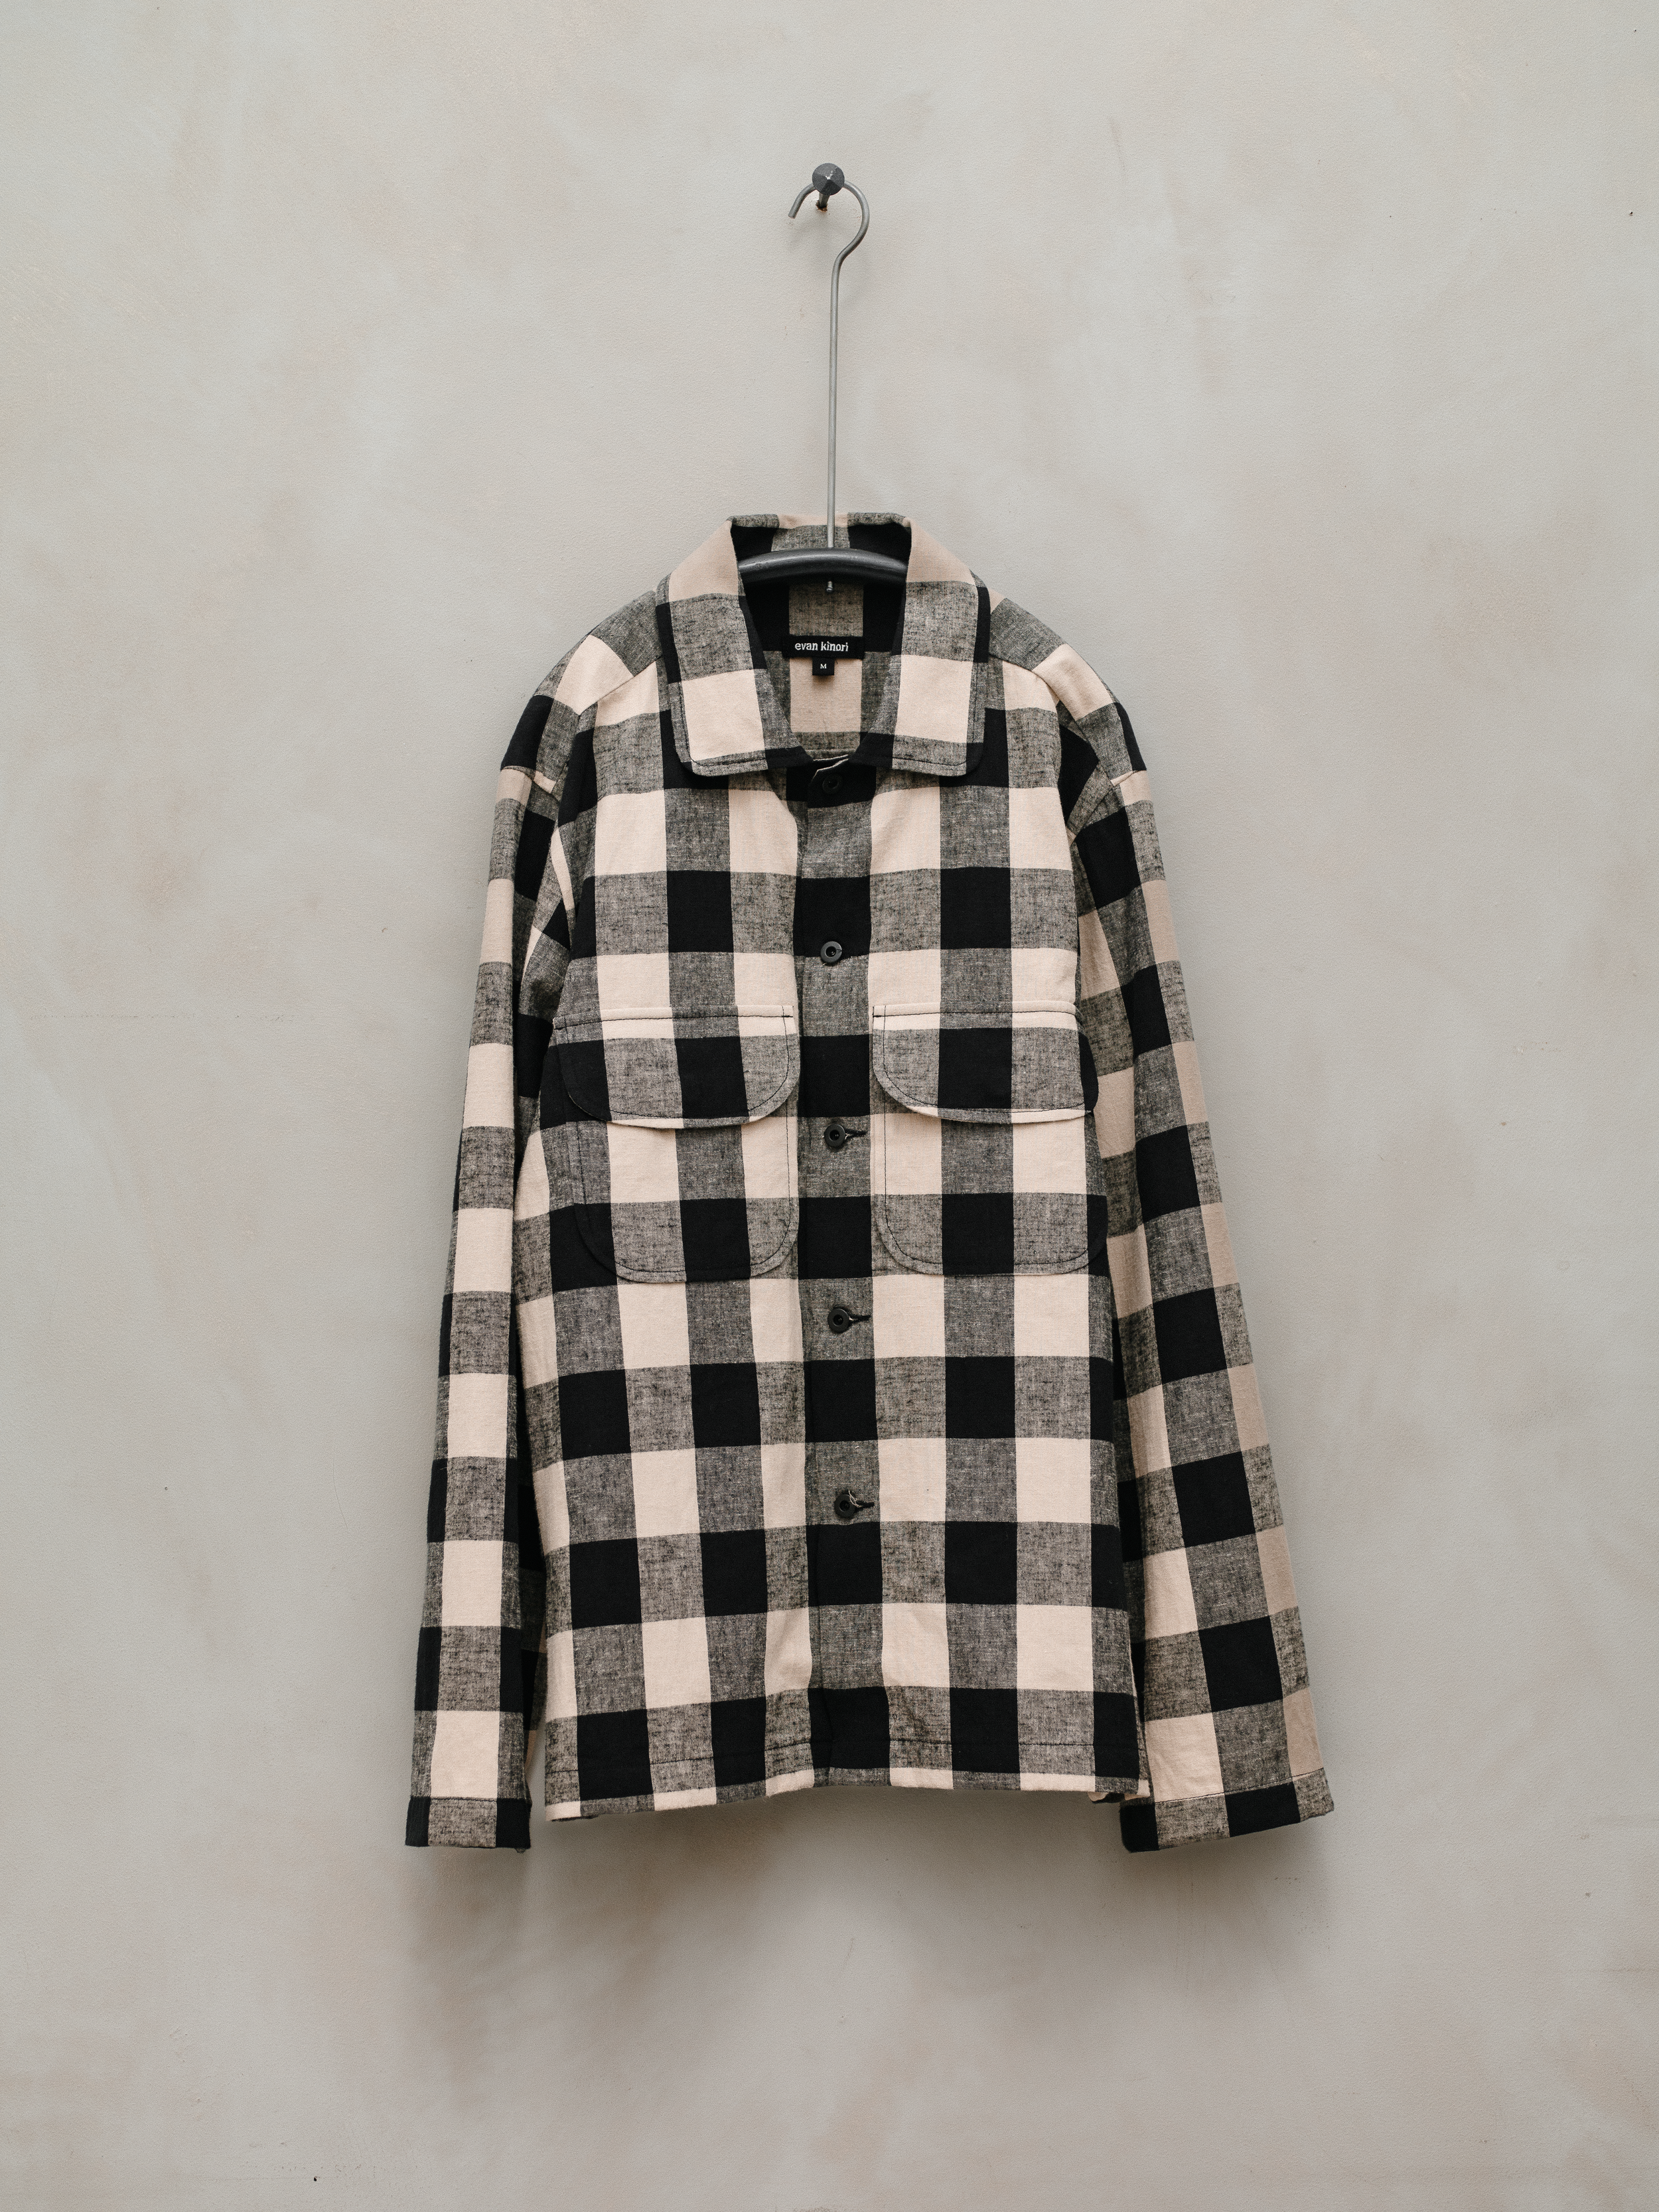 Field Shirt - Cotton/Linen Check – evan kinori